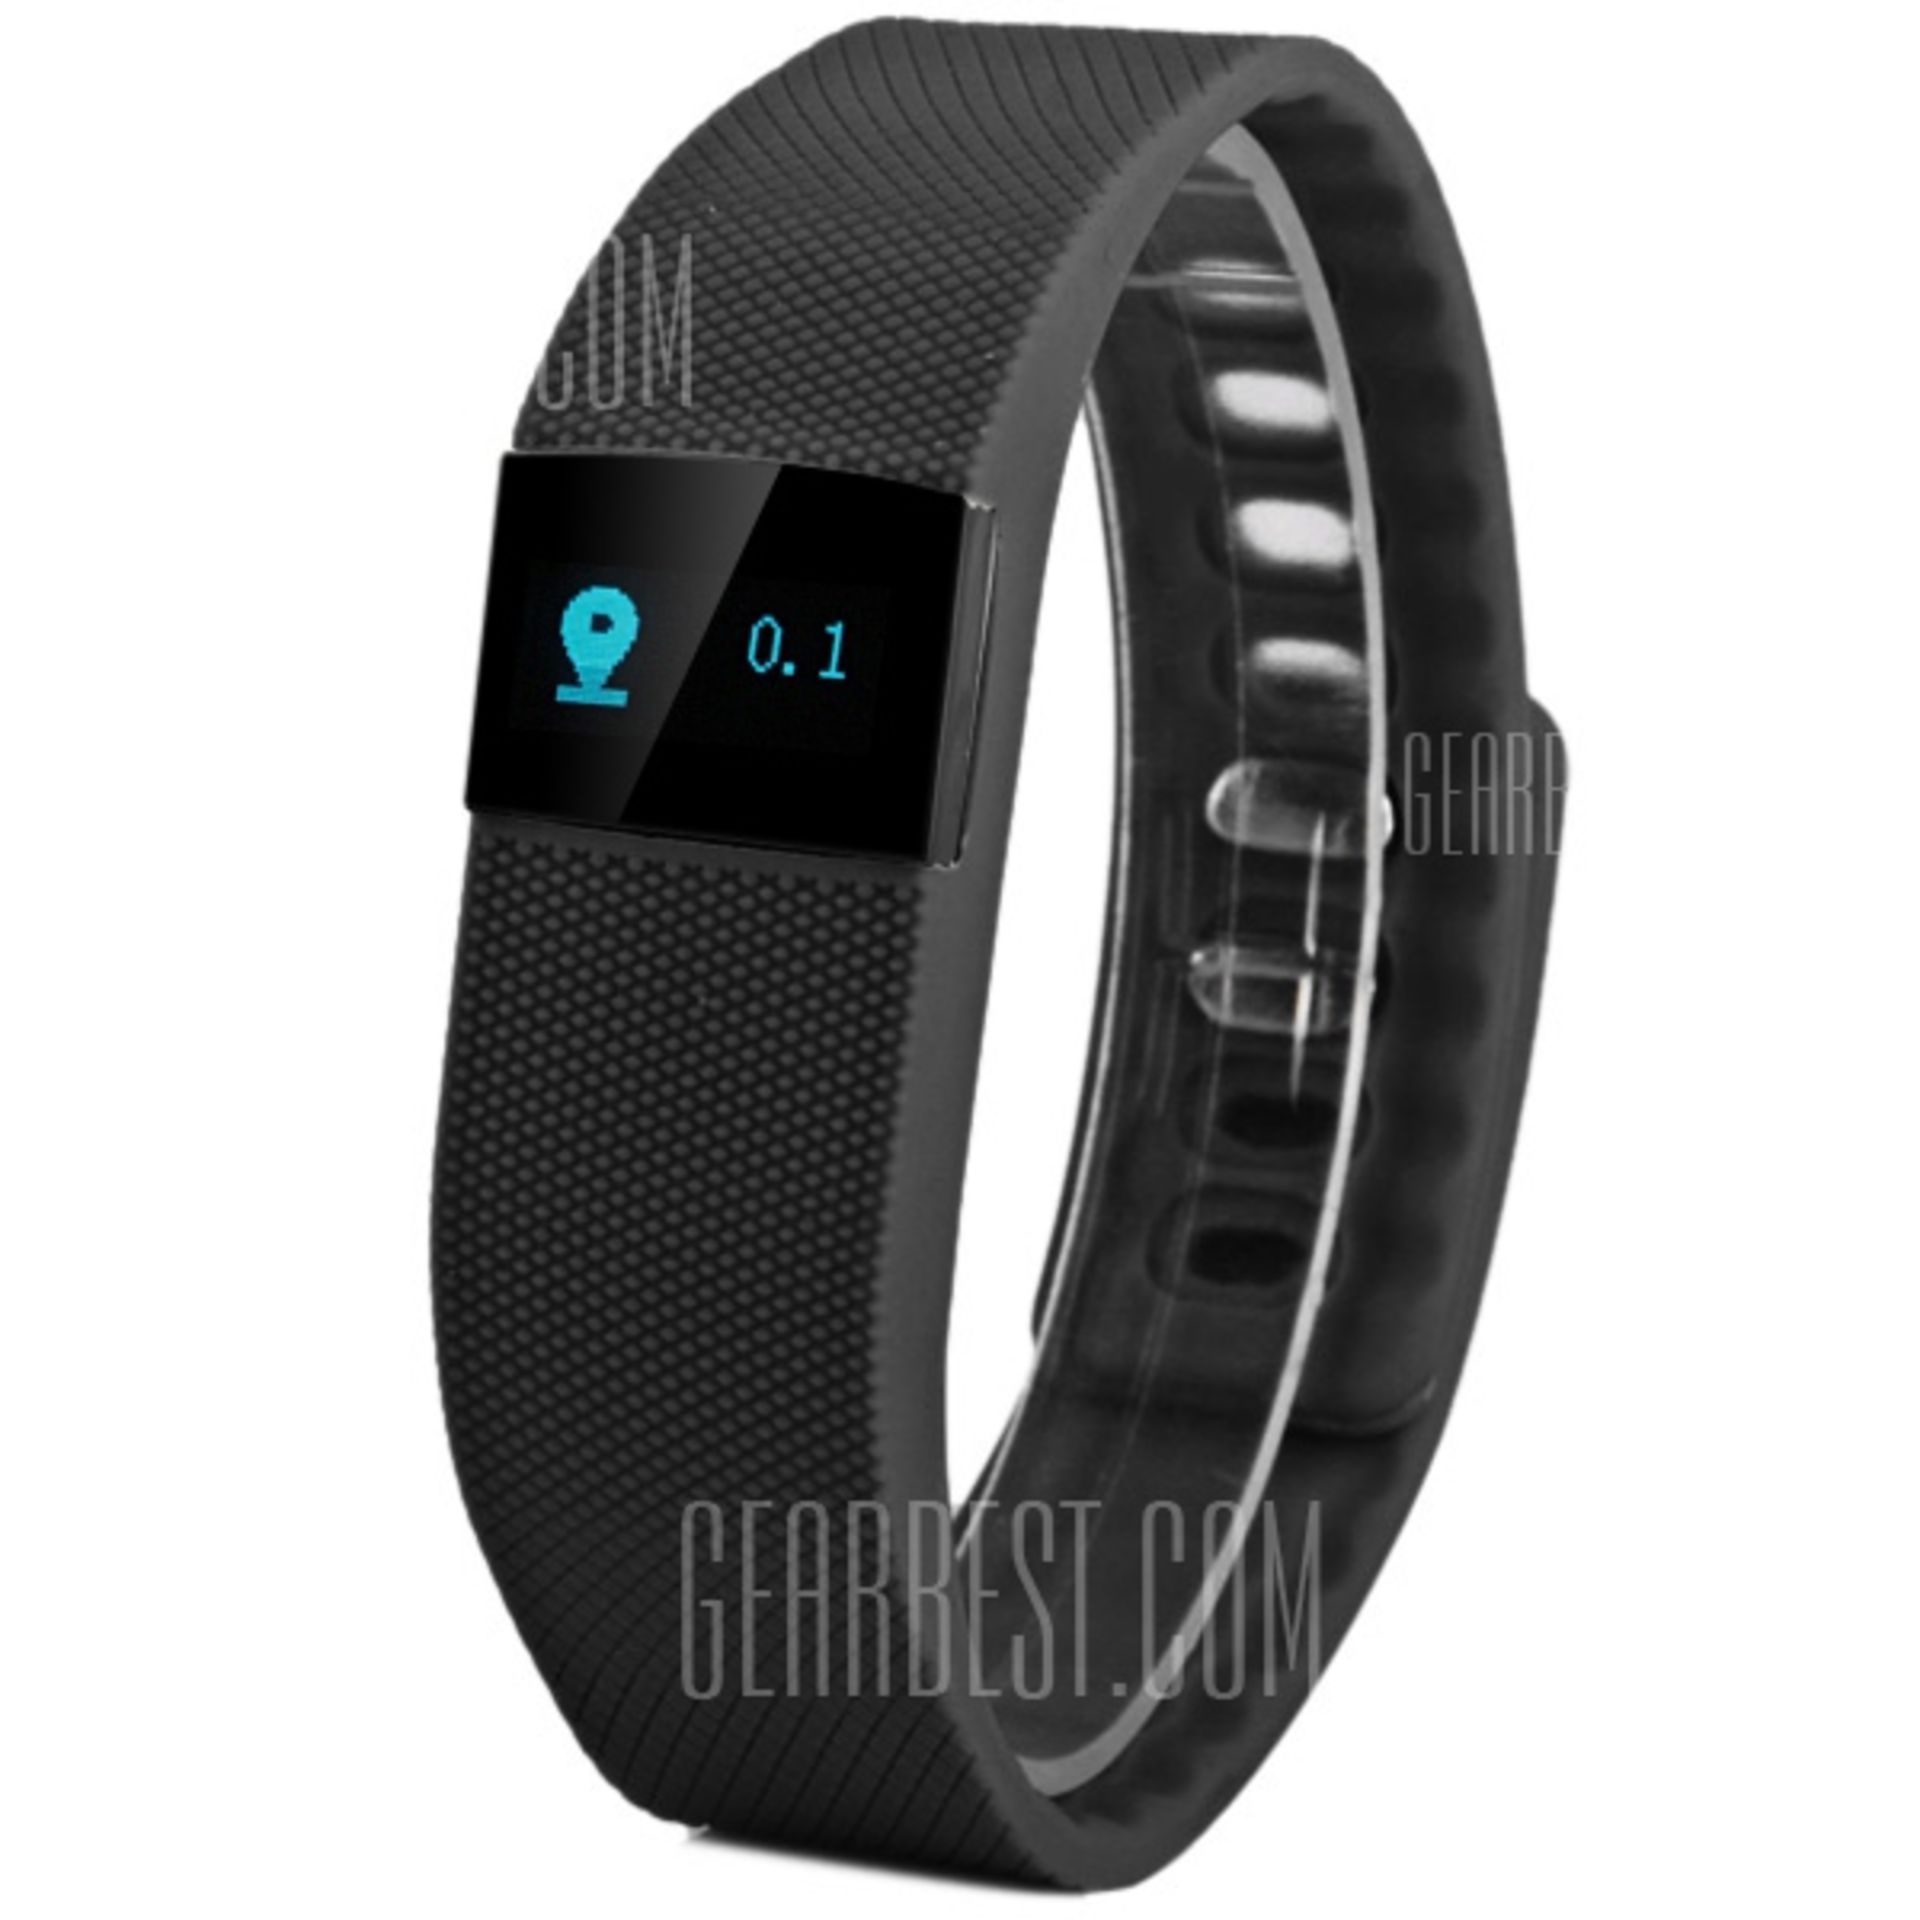 TW64 Bluetooth 4.0 Smart Bracelet Watch Sports Wristwatch